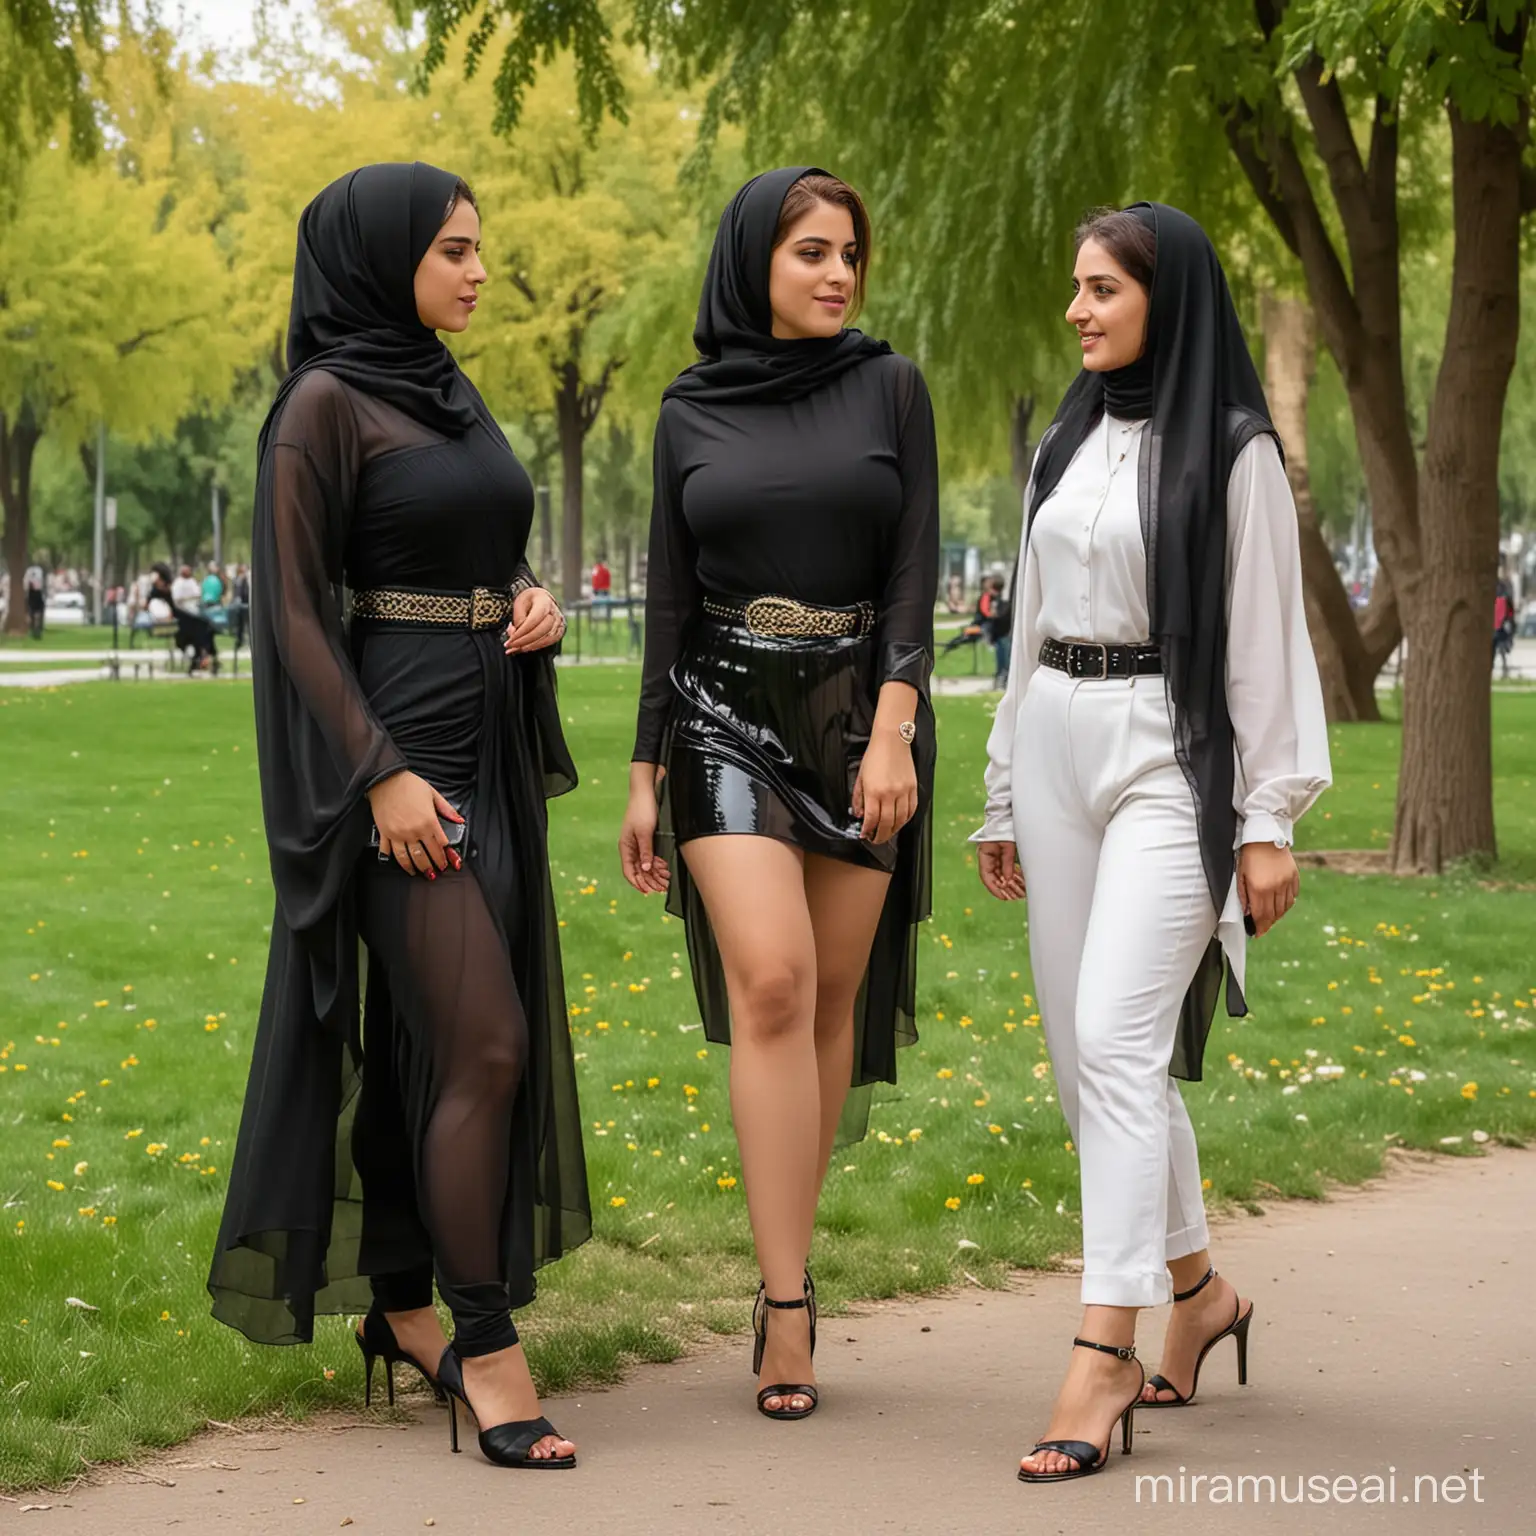 دو دختر زیبای حجابی ایرانی در پارک و در کنار زنان شهوتی باهم قصه می کنند، و در کمر شان کمربند دارند و ران های بزرگ سکسی و در پای شان چپلک پاشینه بلند 